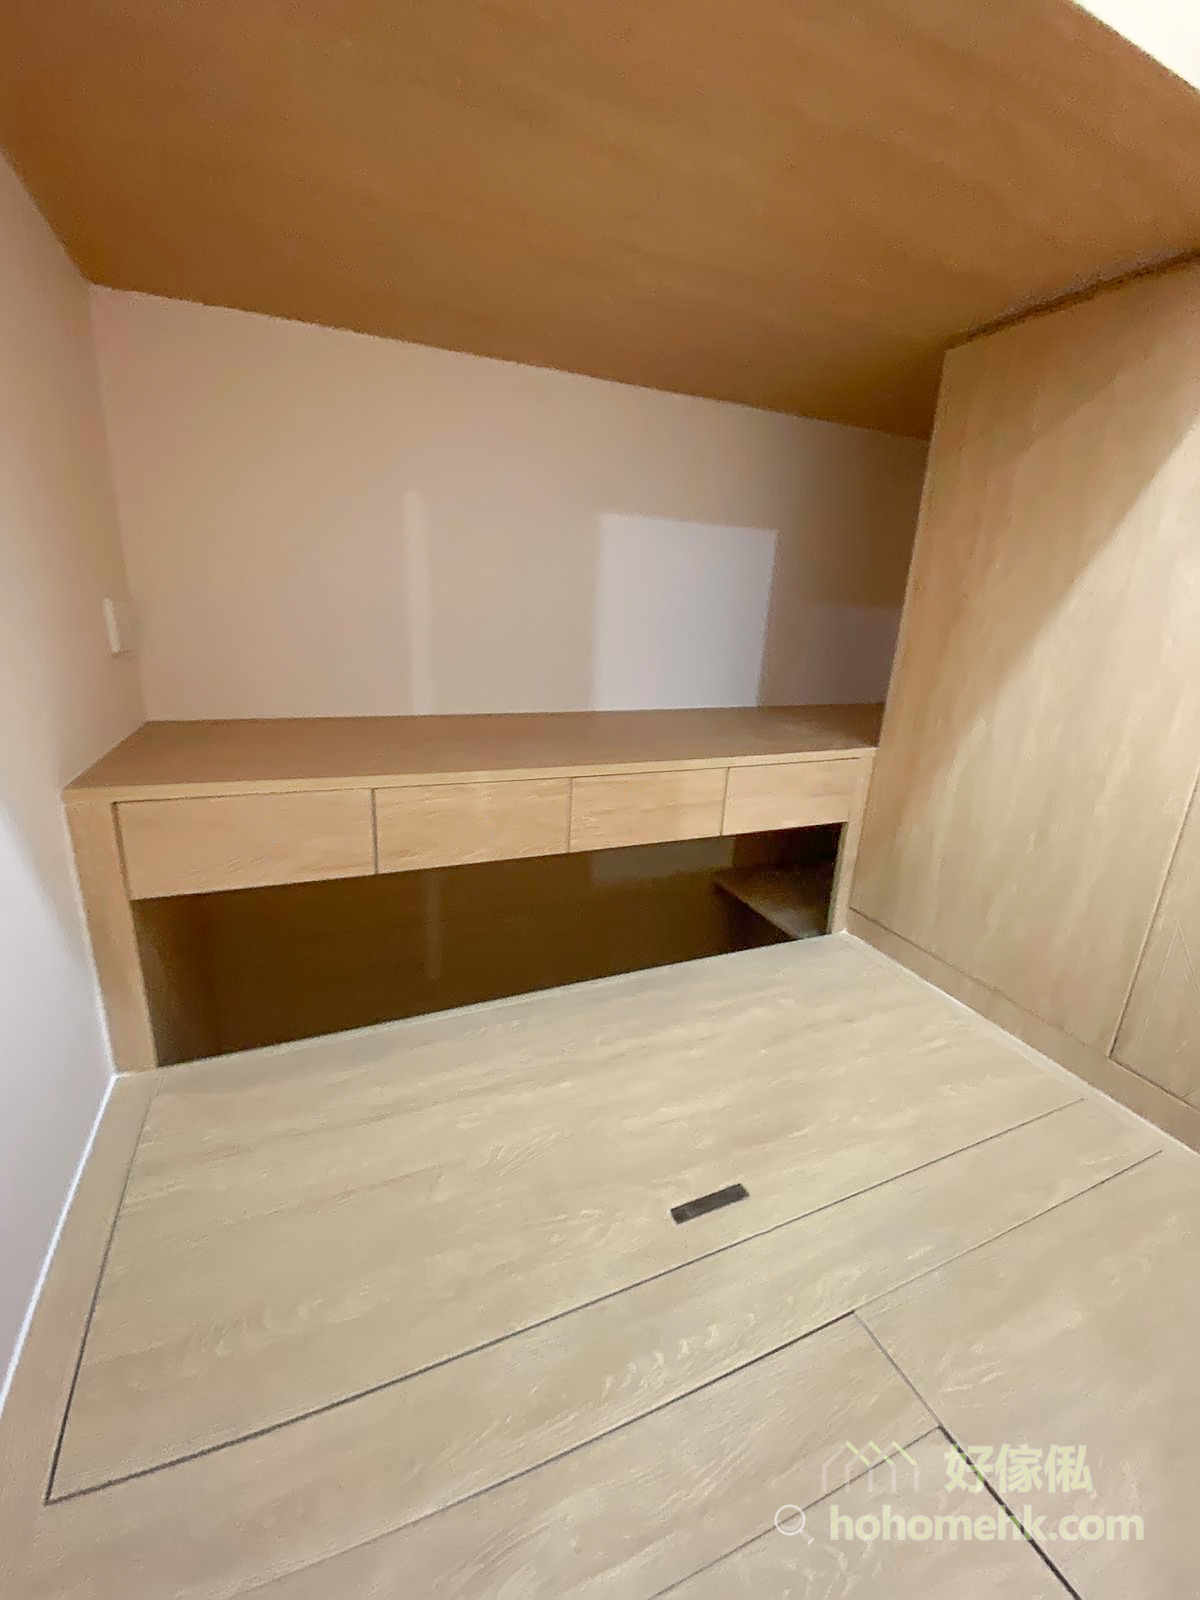 用盡隔間內的所有空間來進行收納，包括全房的地板櫃和高衣櫃，而且採用「上床下桌」的設計，連垂直空間都完美運用